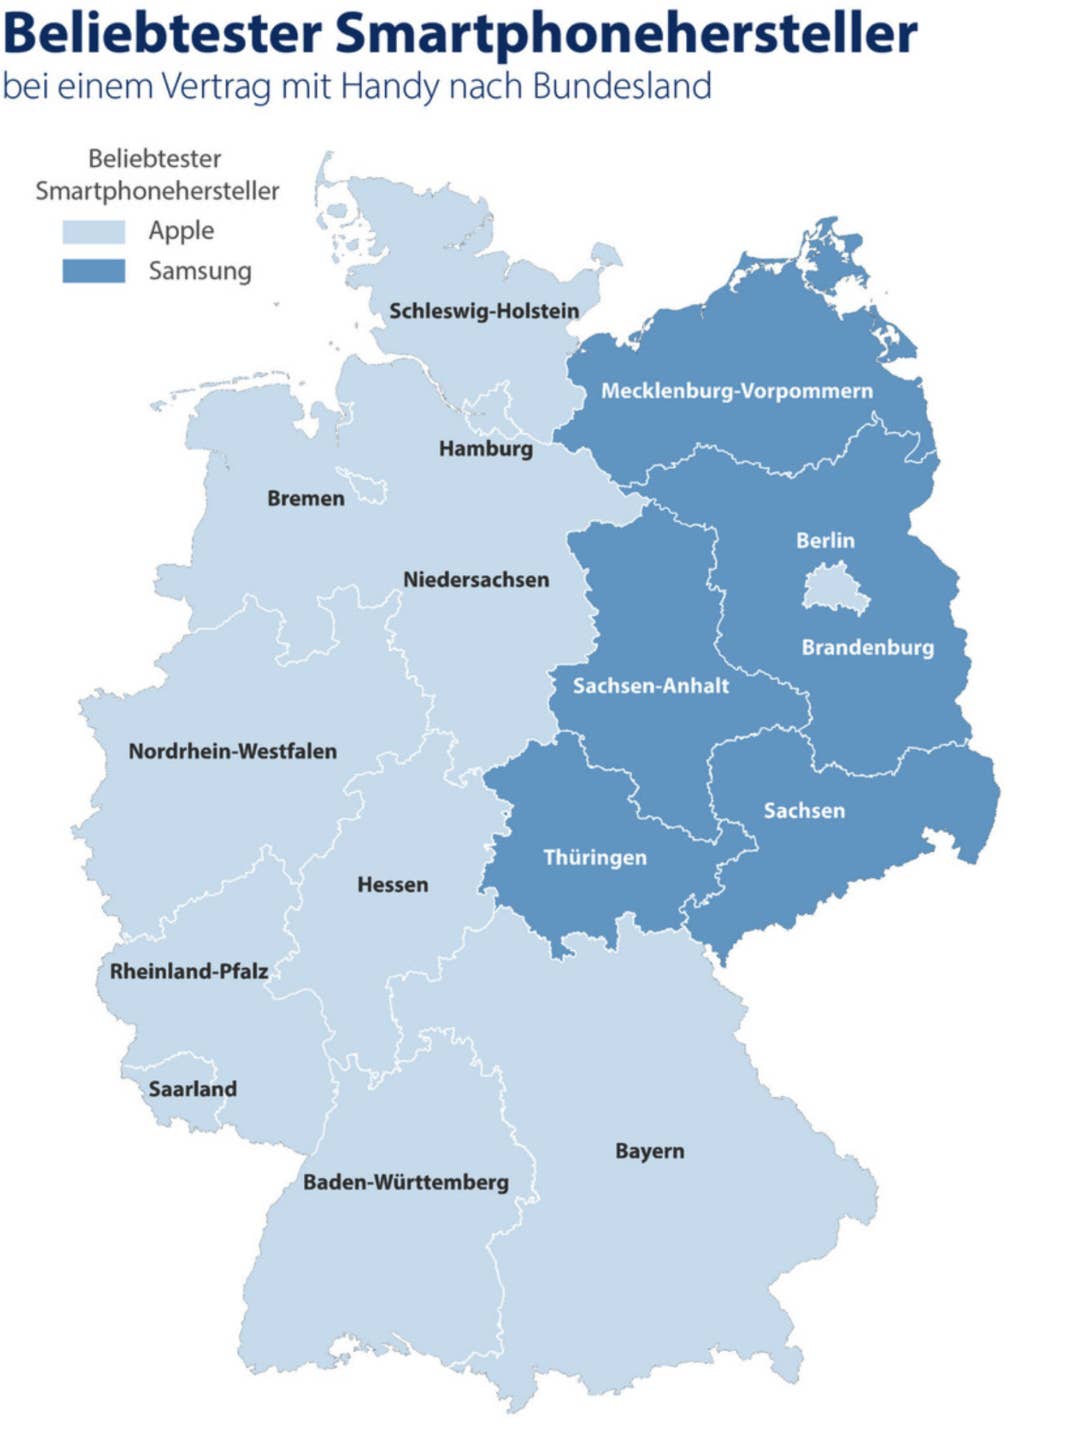 Beliebtester Smartphone-Hersteller Deutschlands nach Bundesländern